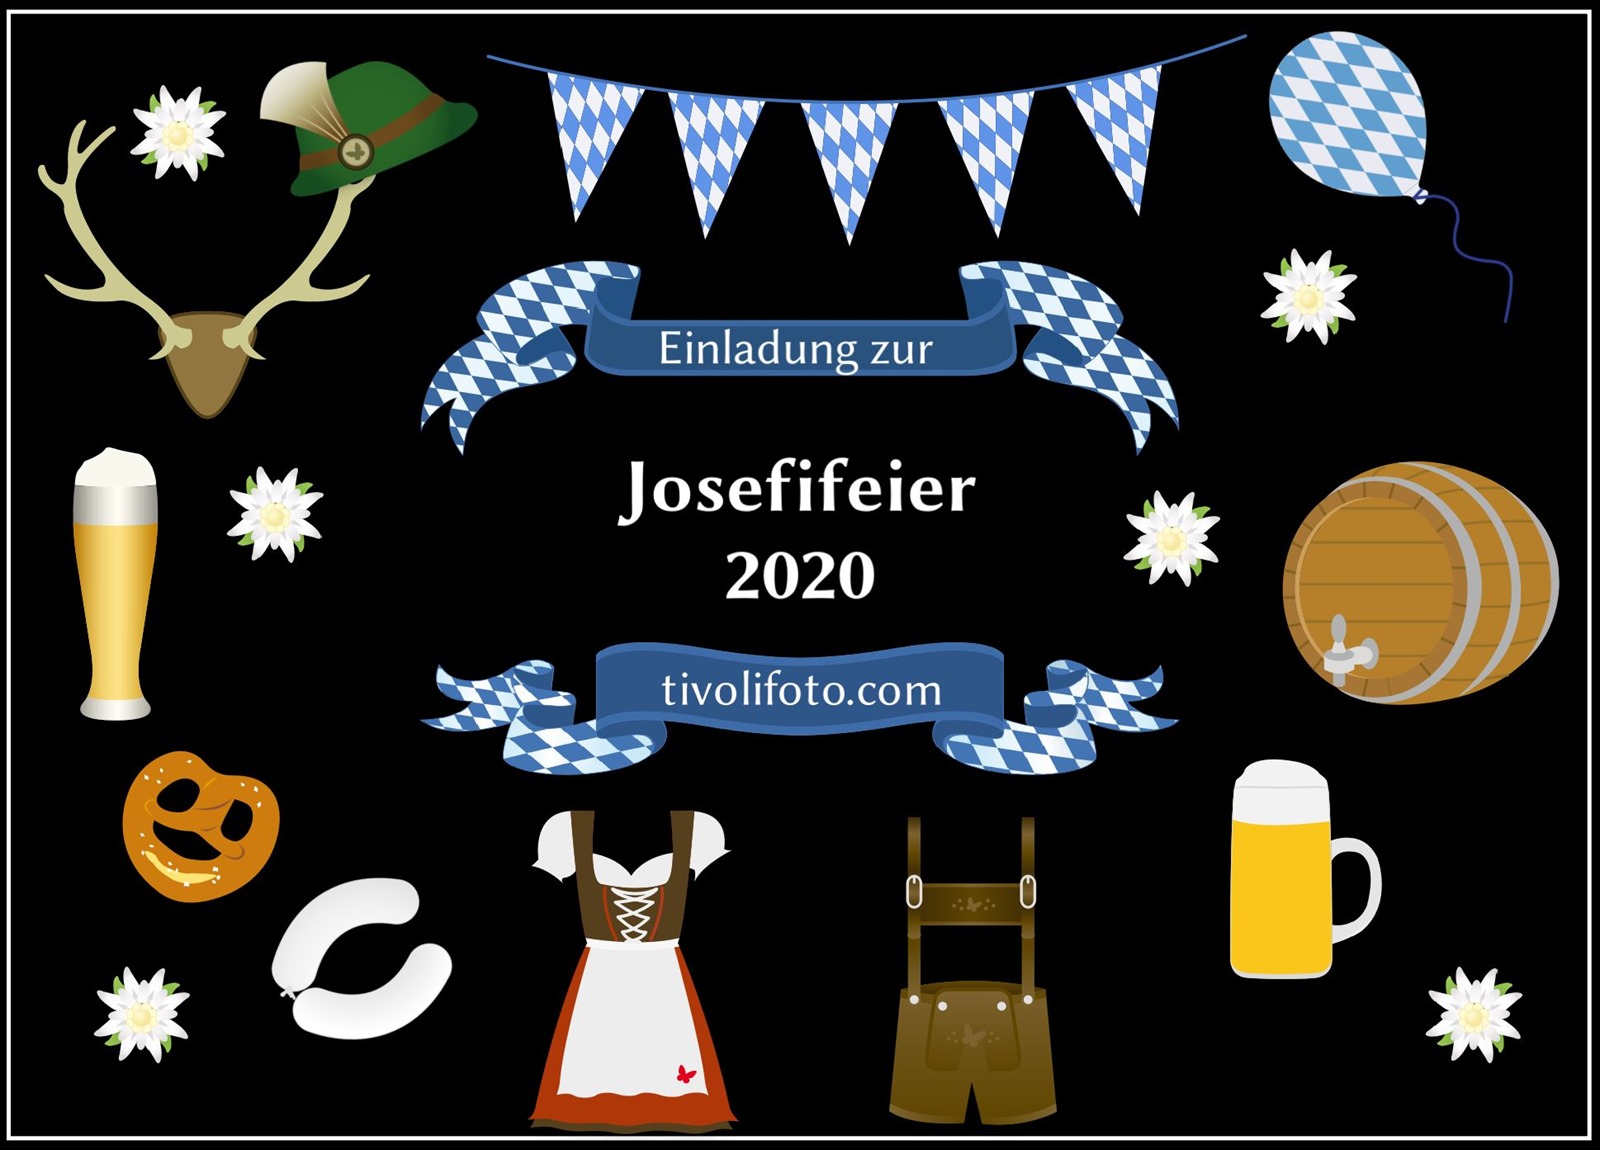 Josefifeier 2020